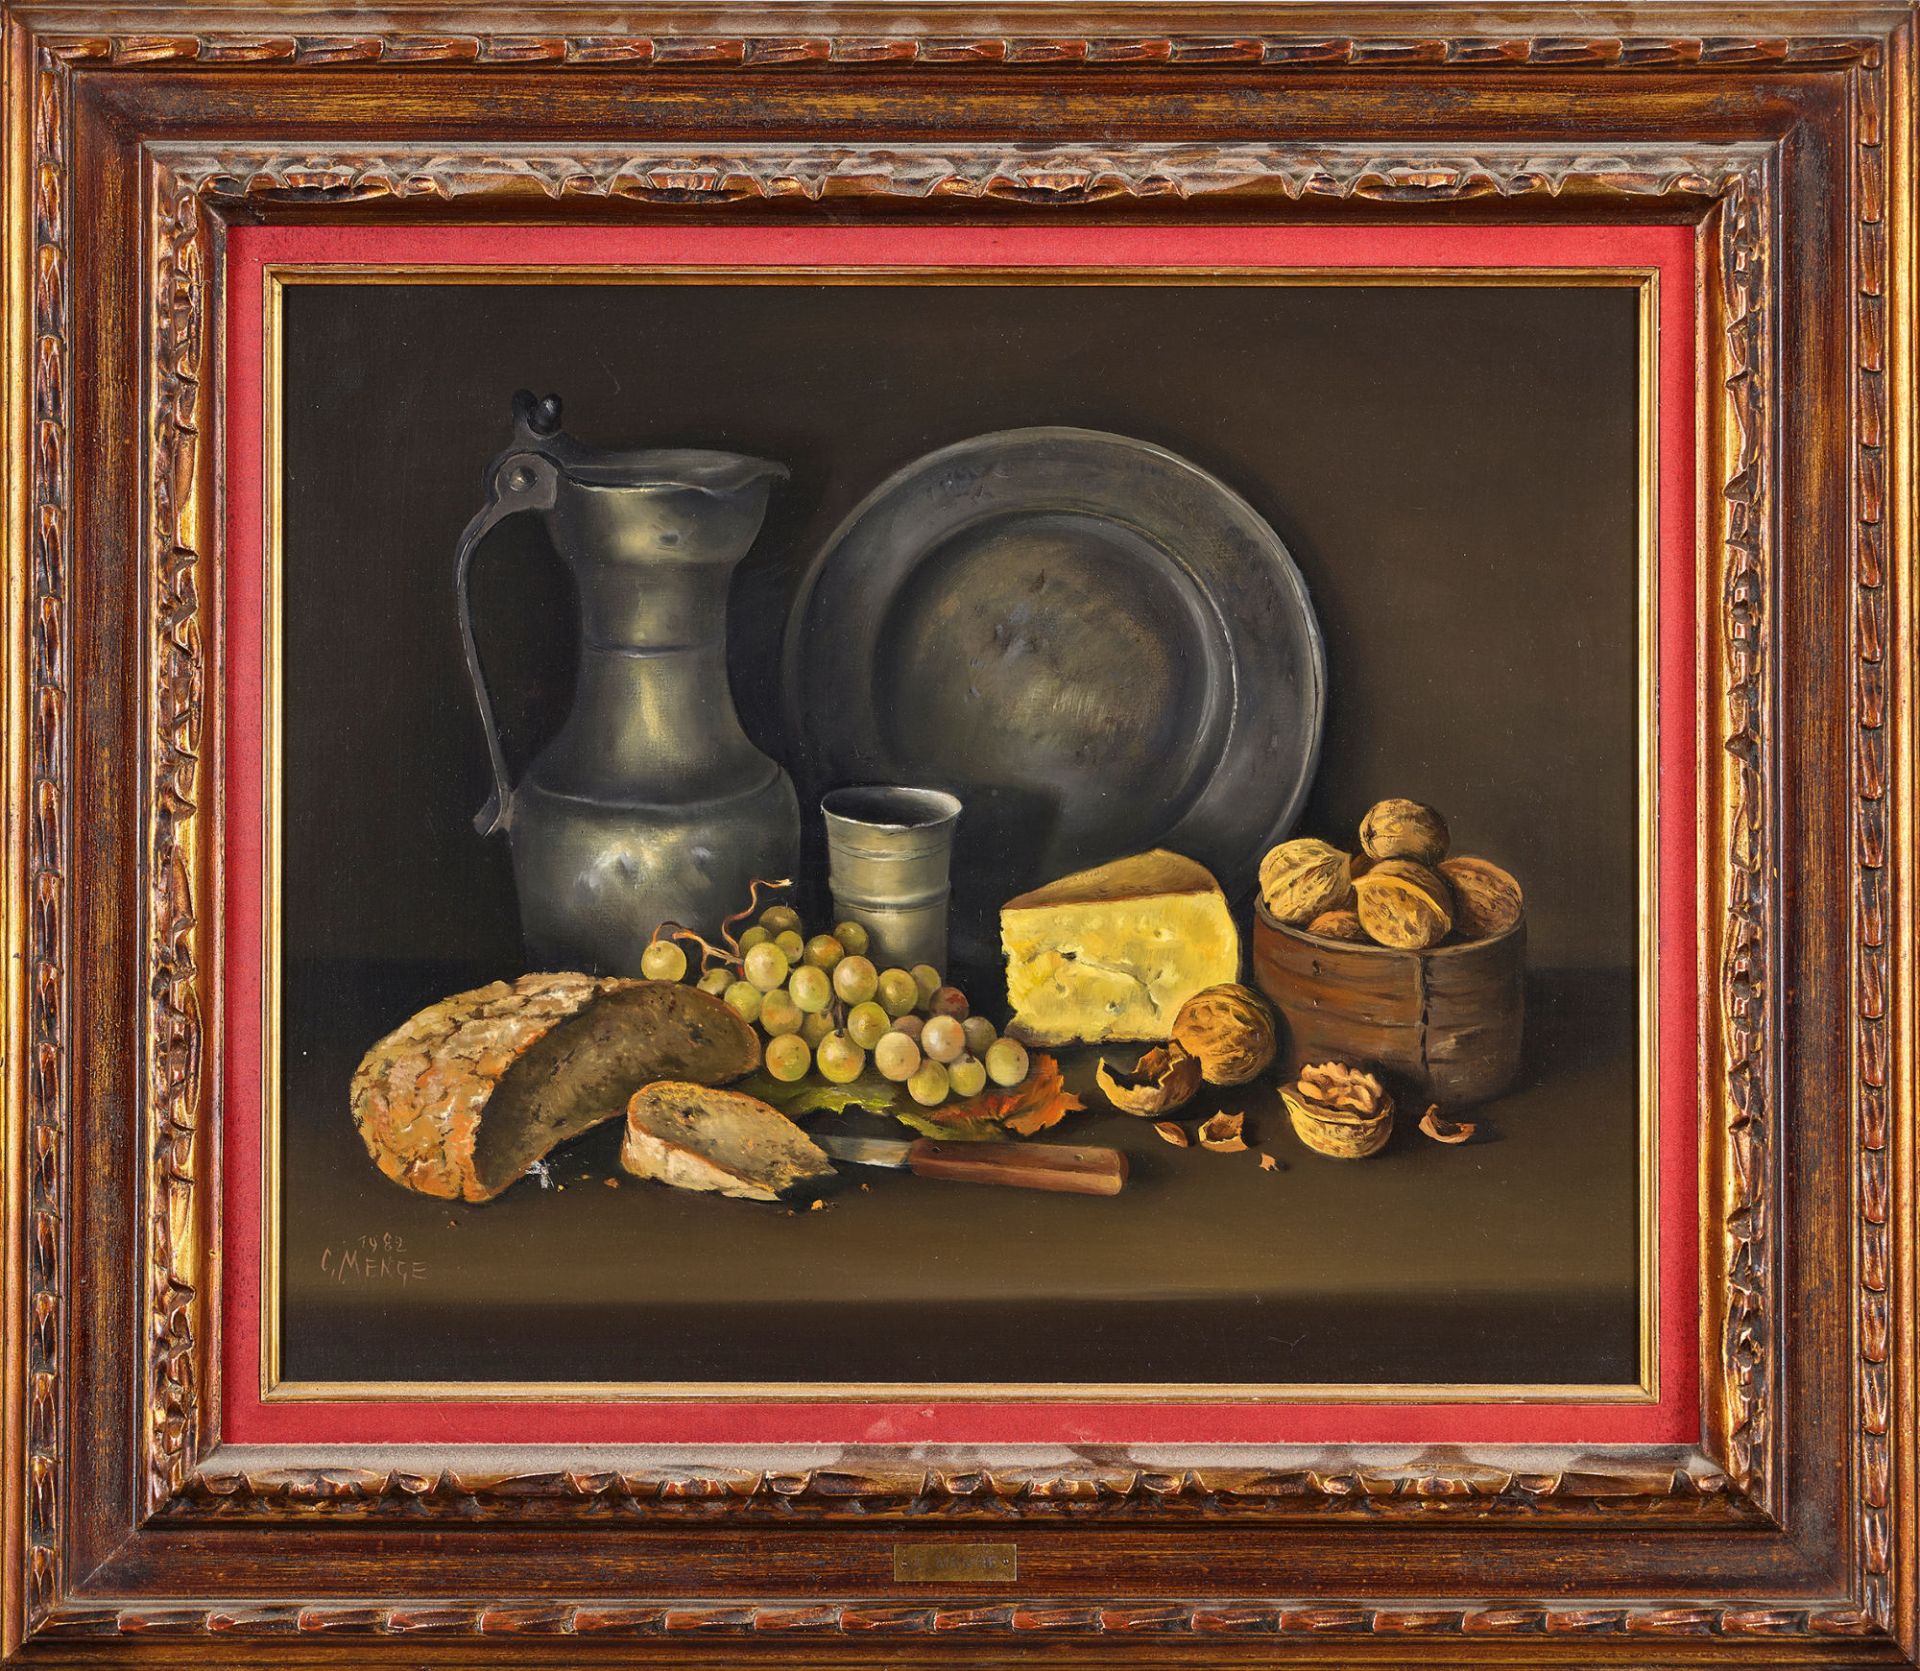 MENGE, CHARLES: Stillleben mit Brot, Käse, Trauben, Nüssen und Zinngeschirr. - Bild 2 aus 2